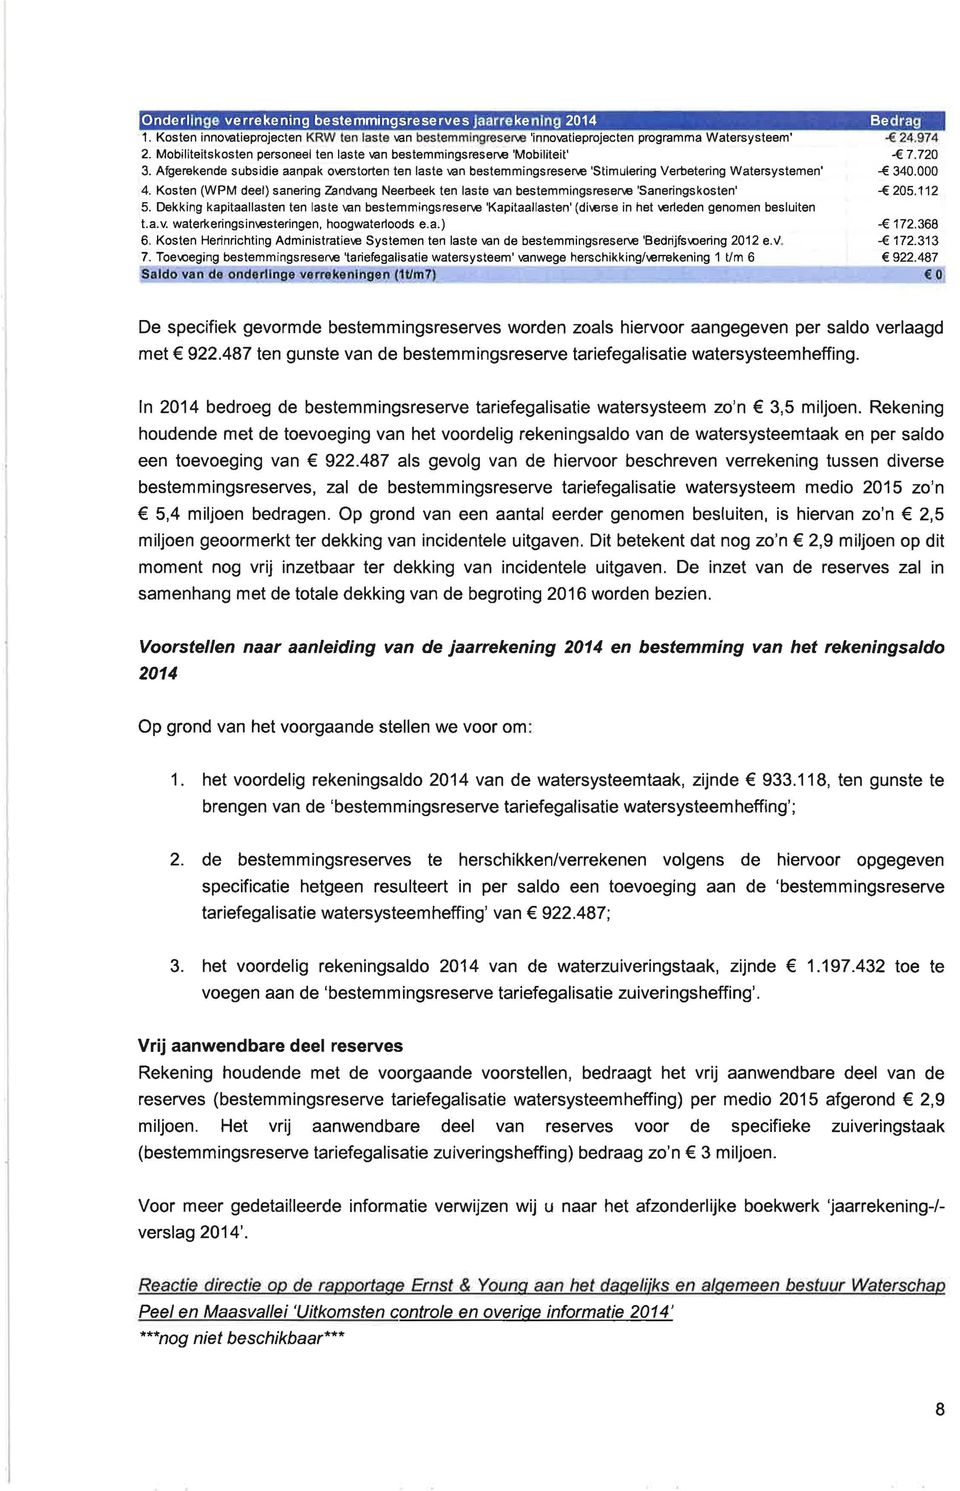 Kosten (WPM deel) sanering Zandvang Neerbeek ten laste van bestemmingsreserve 'Saneringskosten' 5.